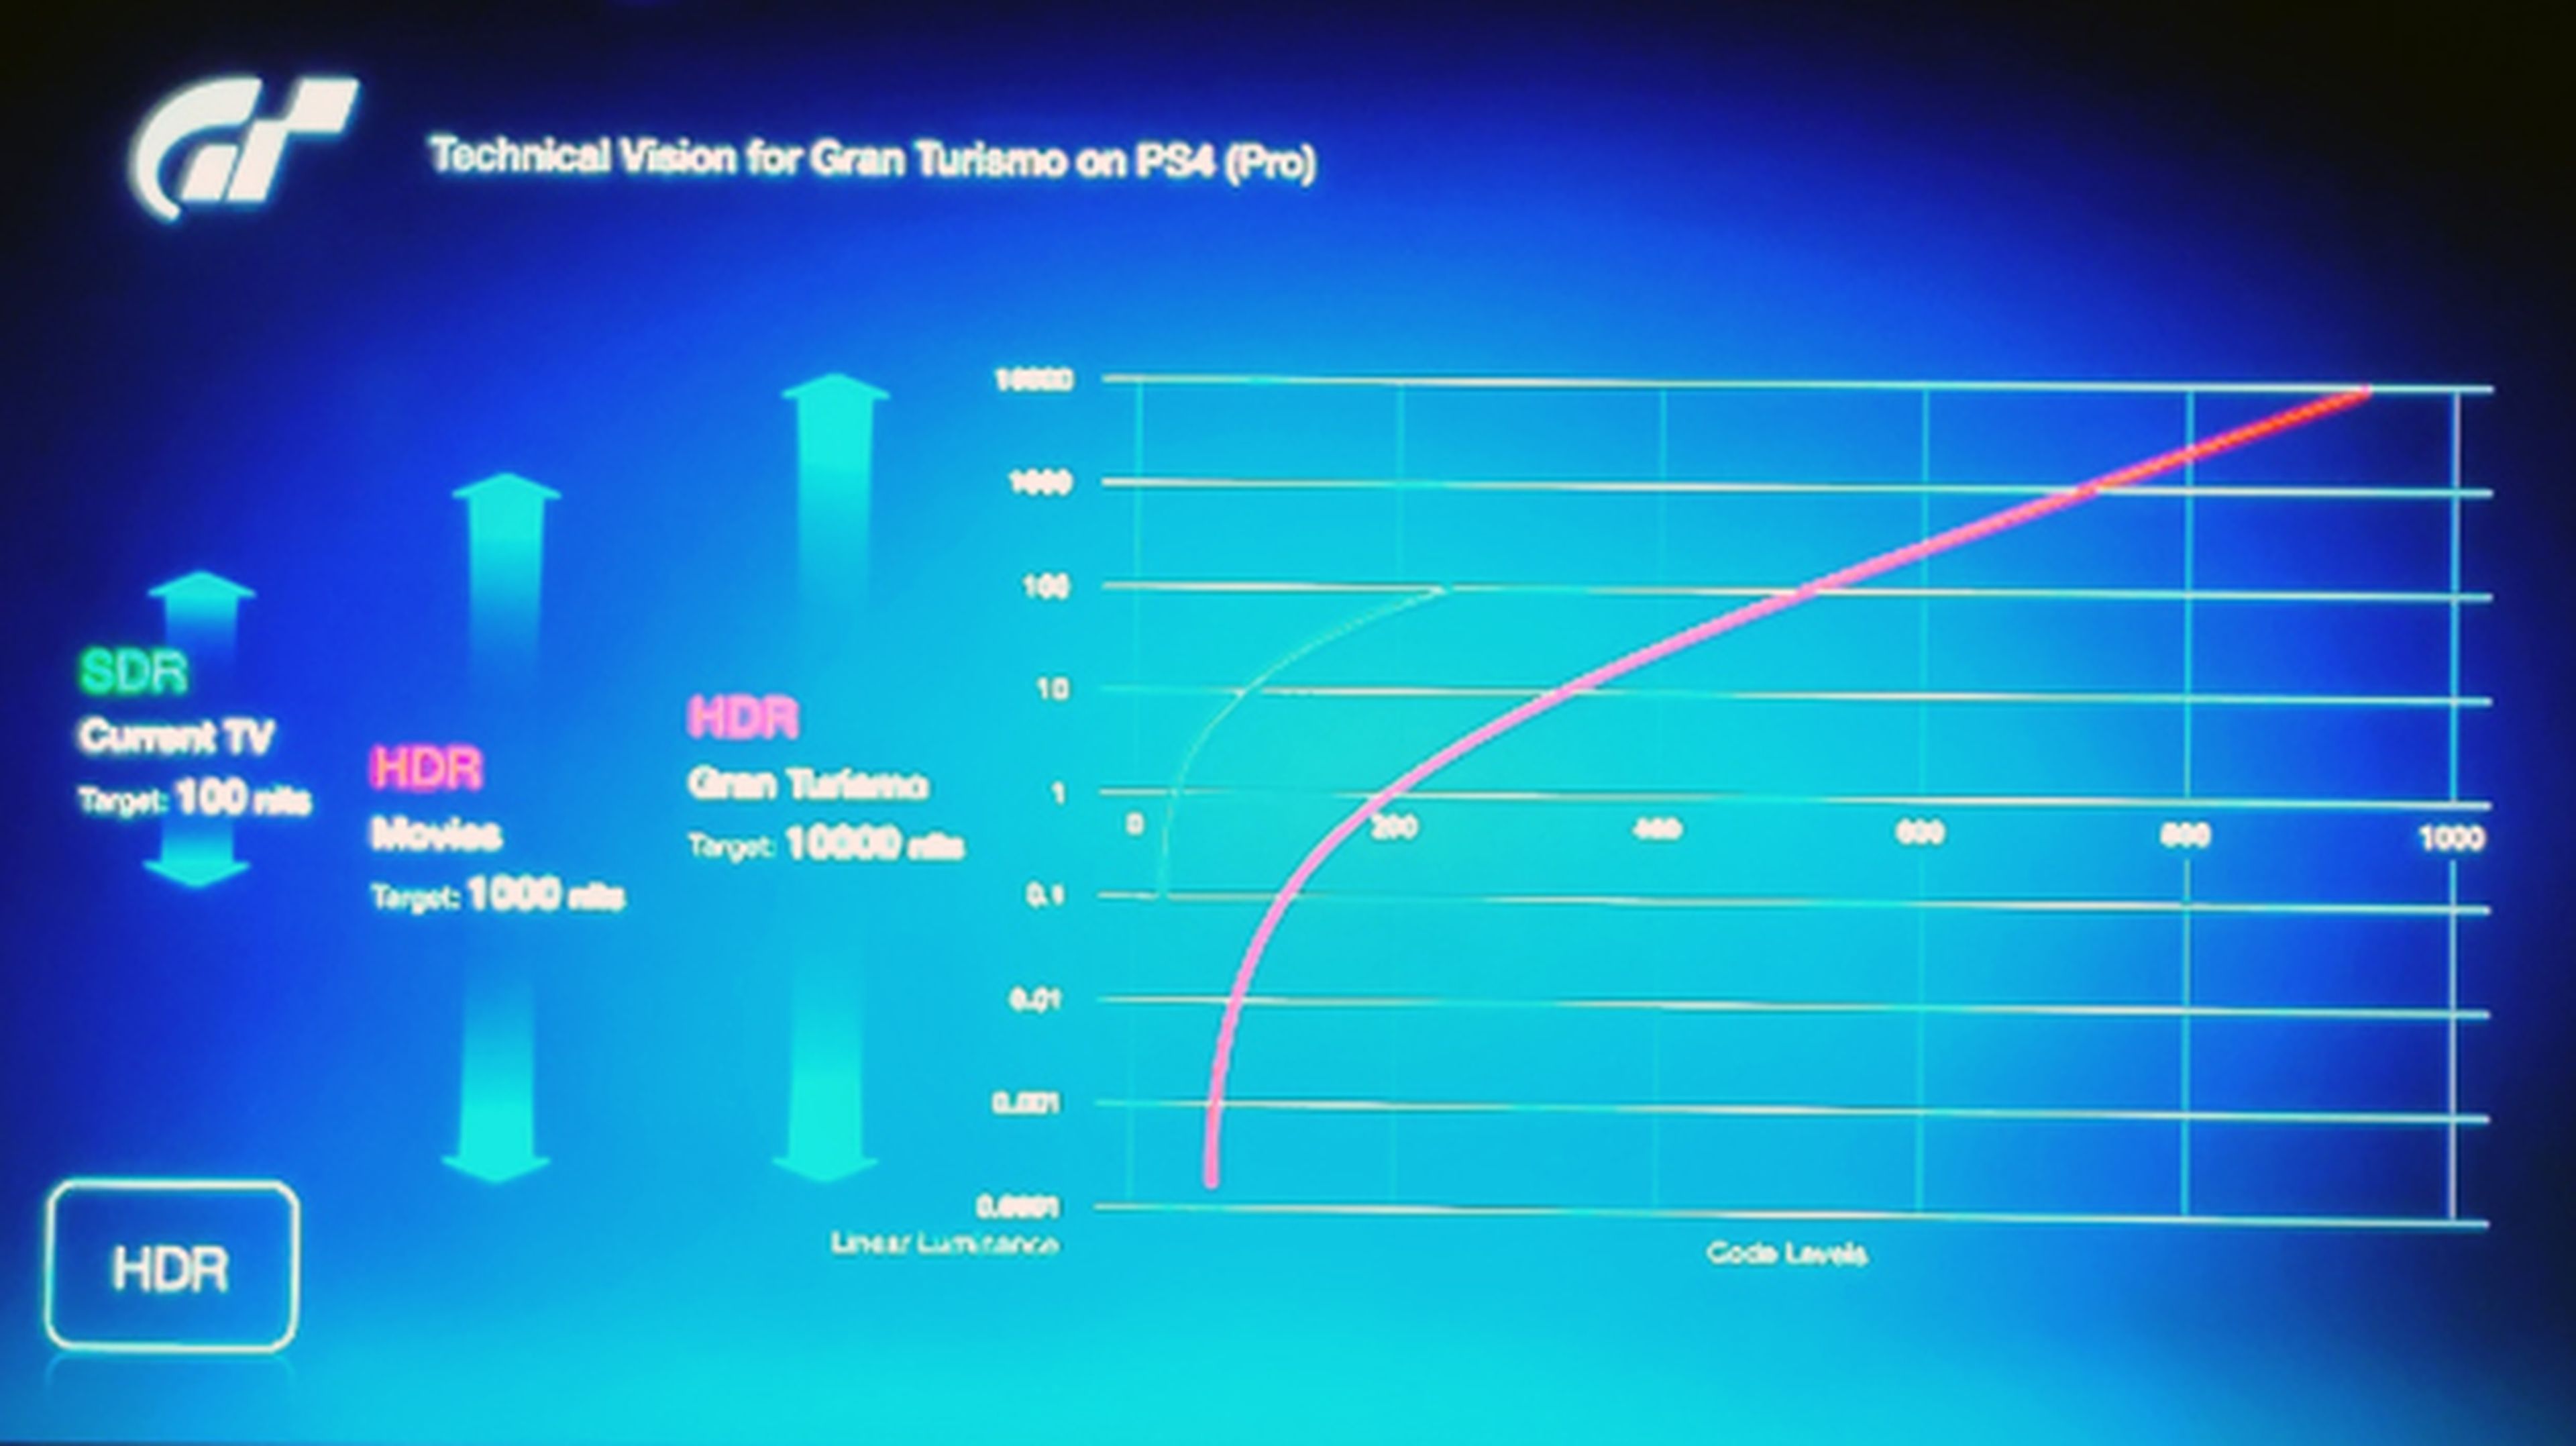 Comparación entre el nivel de brillo (nits) entre la TV convencional y el HDR de GT Sport en PS4